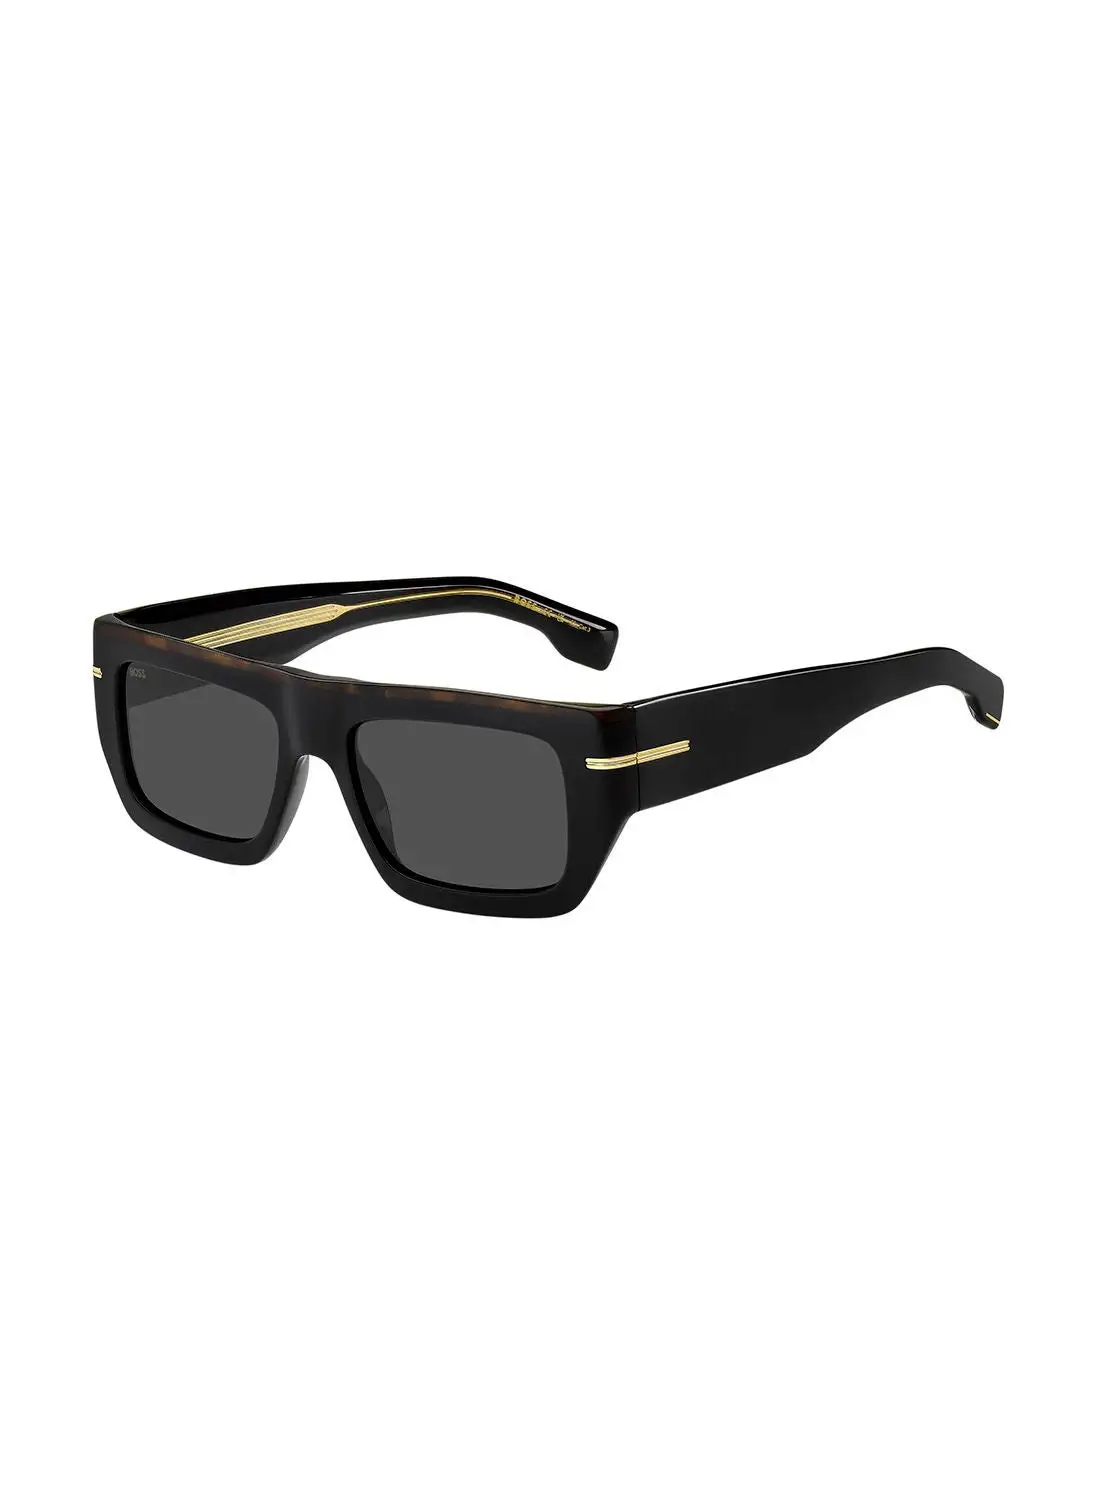 هيوغو بوس نظارة شمسية للرجال للحماية من الأشعة فوق البنفسجية - Boss 1502/S Blk Havan 54 - مقاس العدسة: 54 ملم